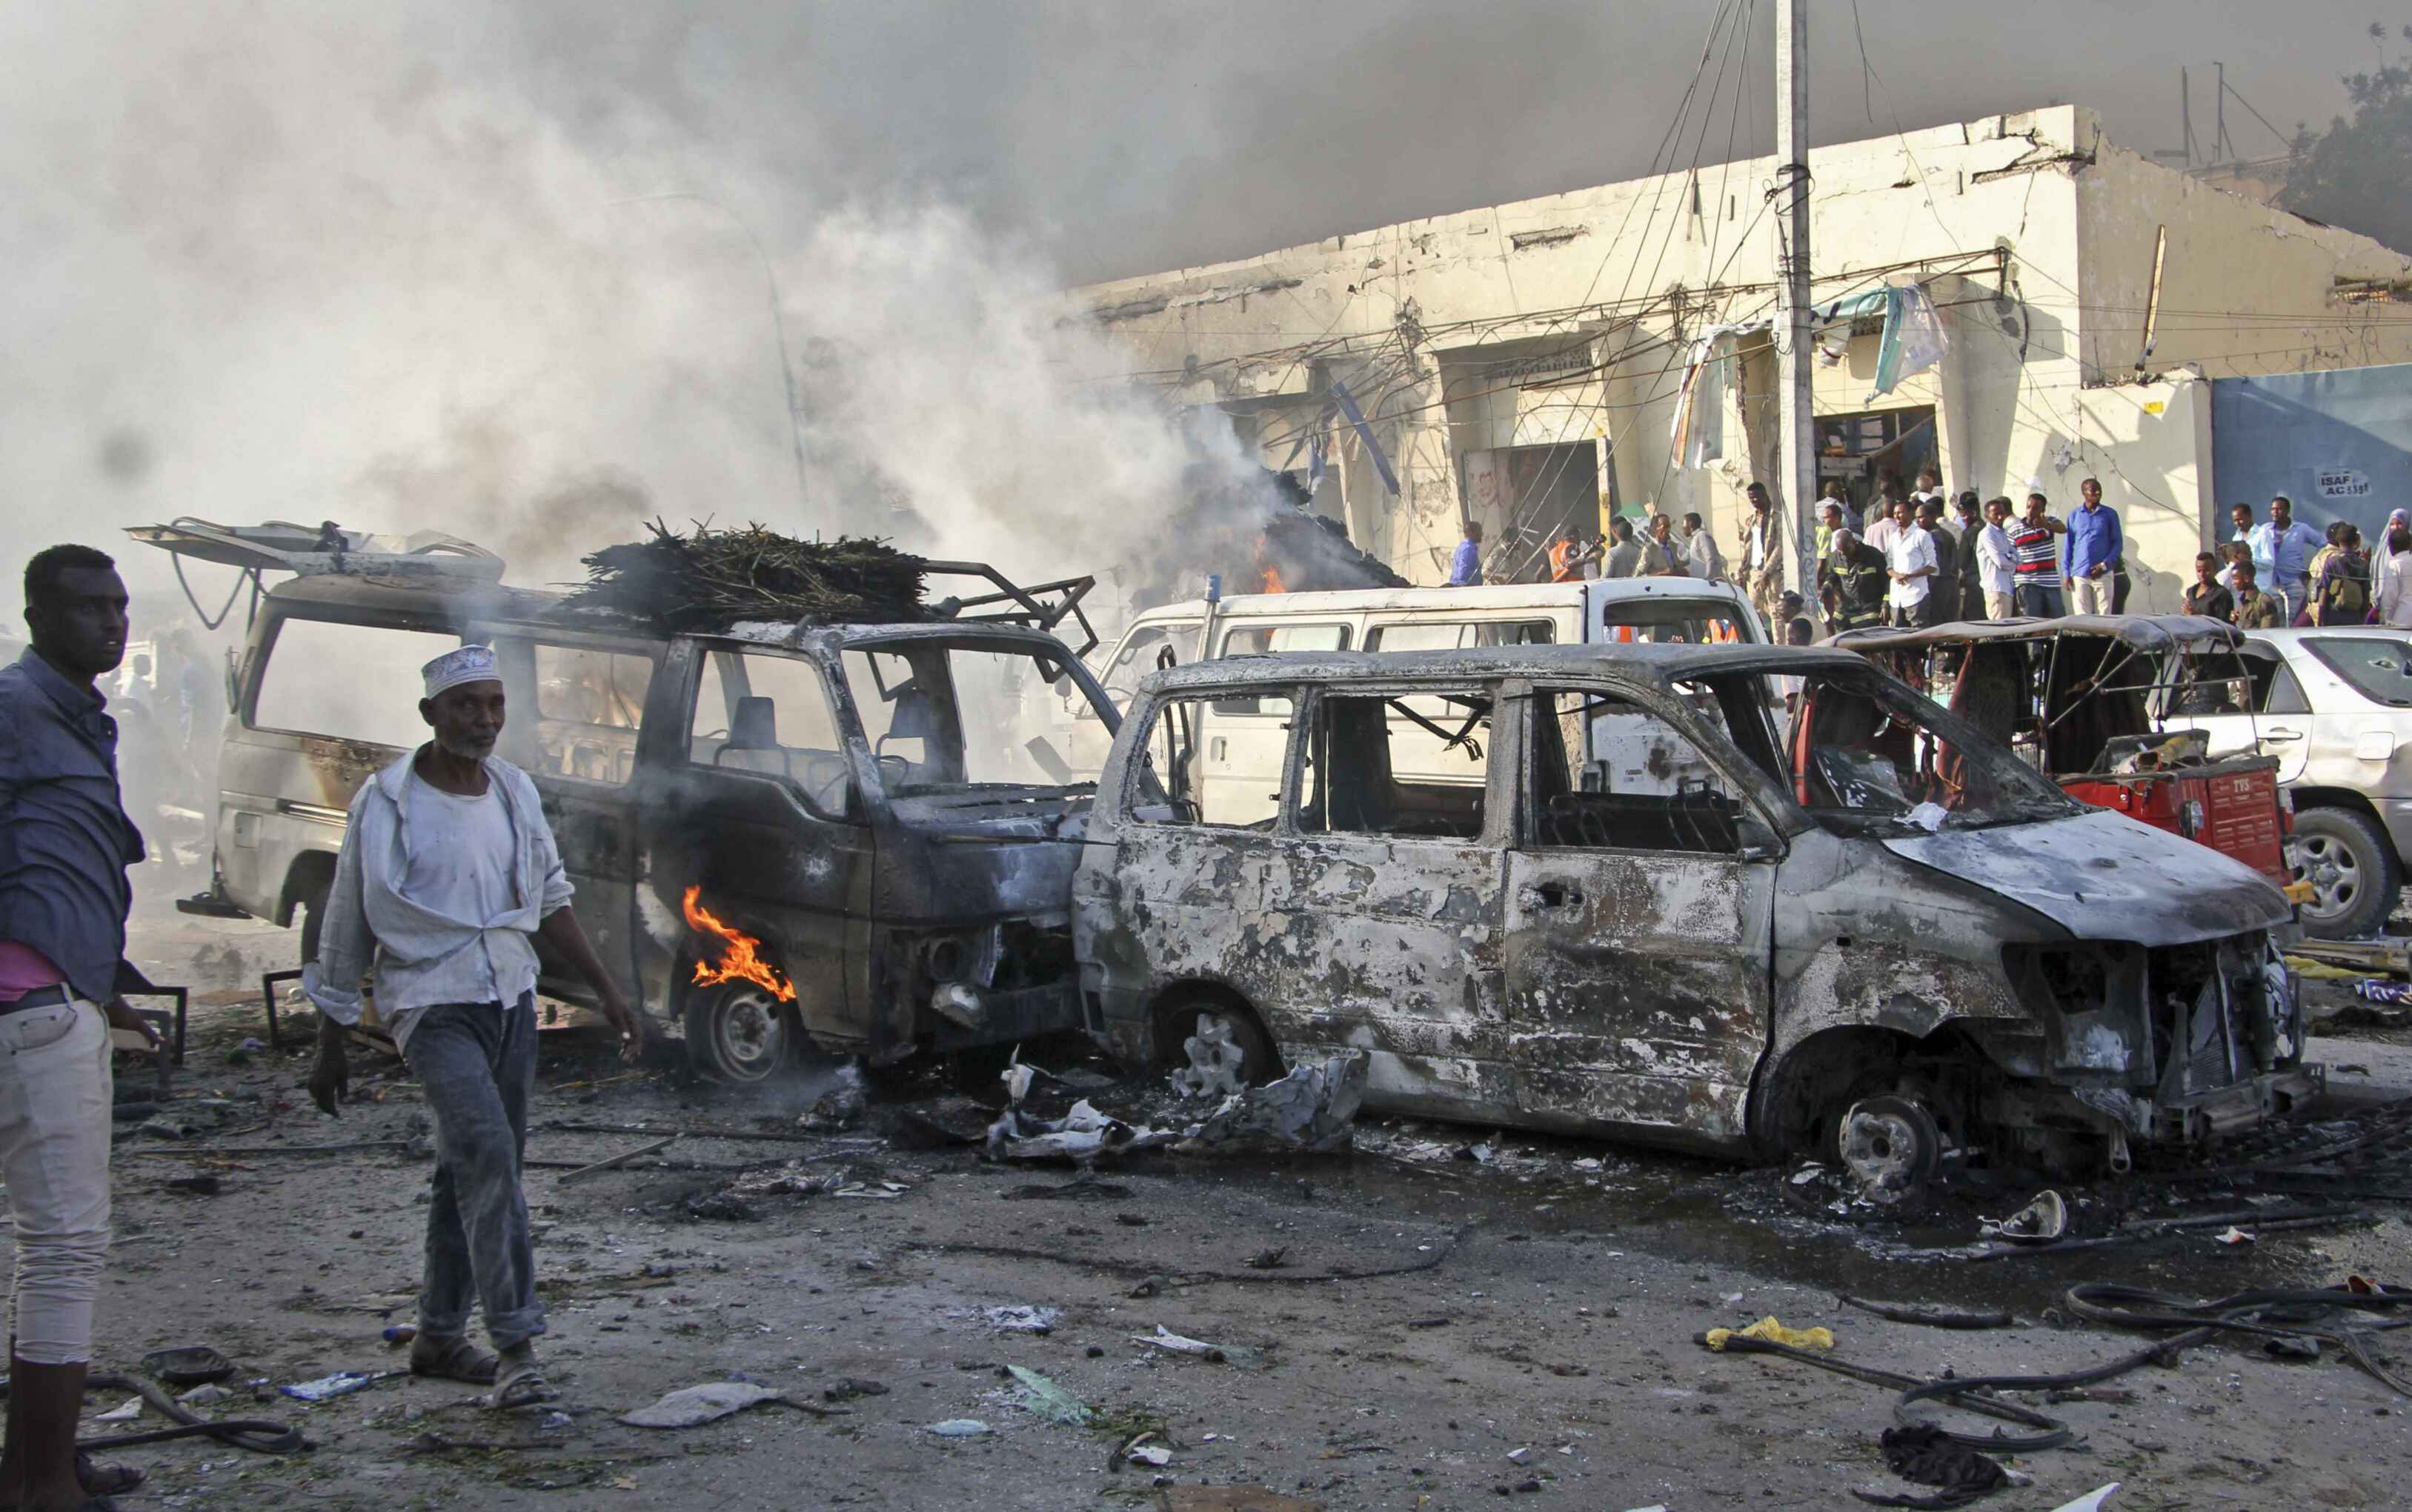 索馬里汽車炸彈襲擊至少40死